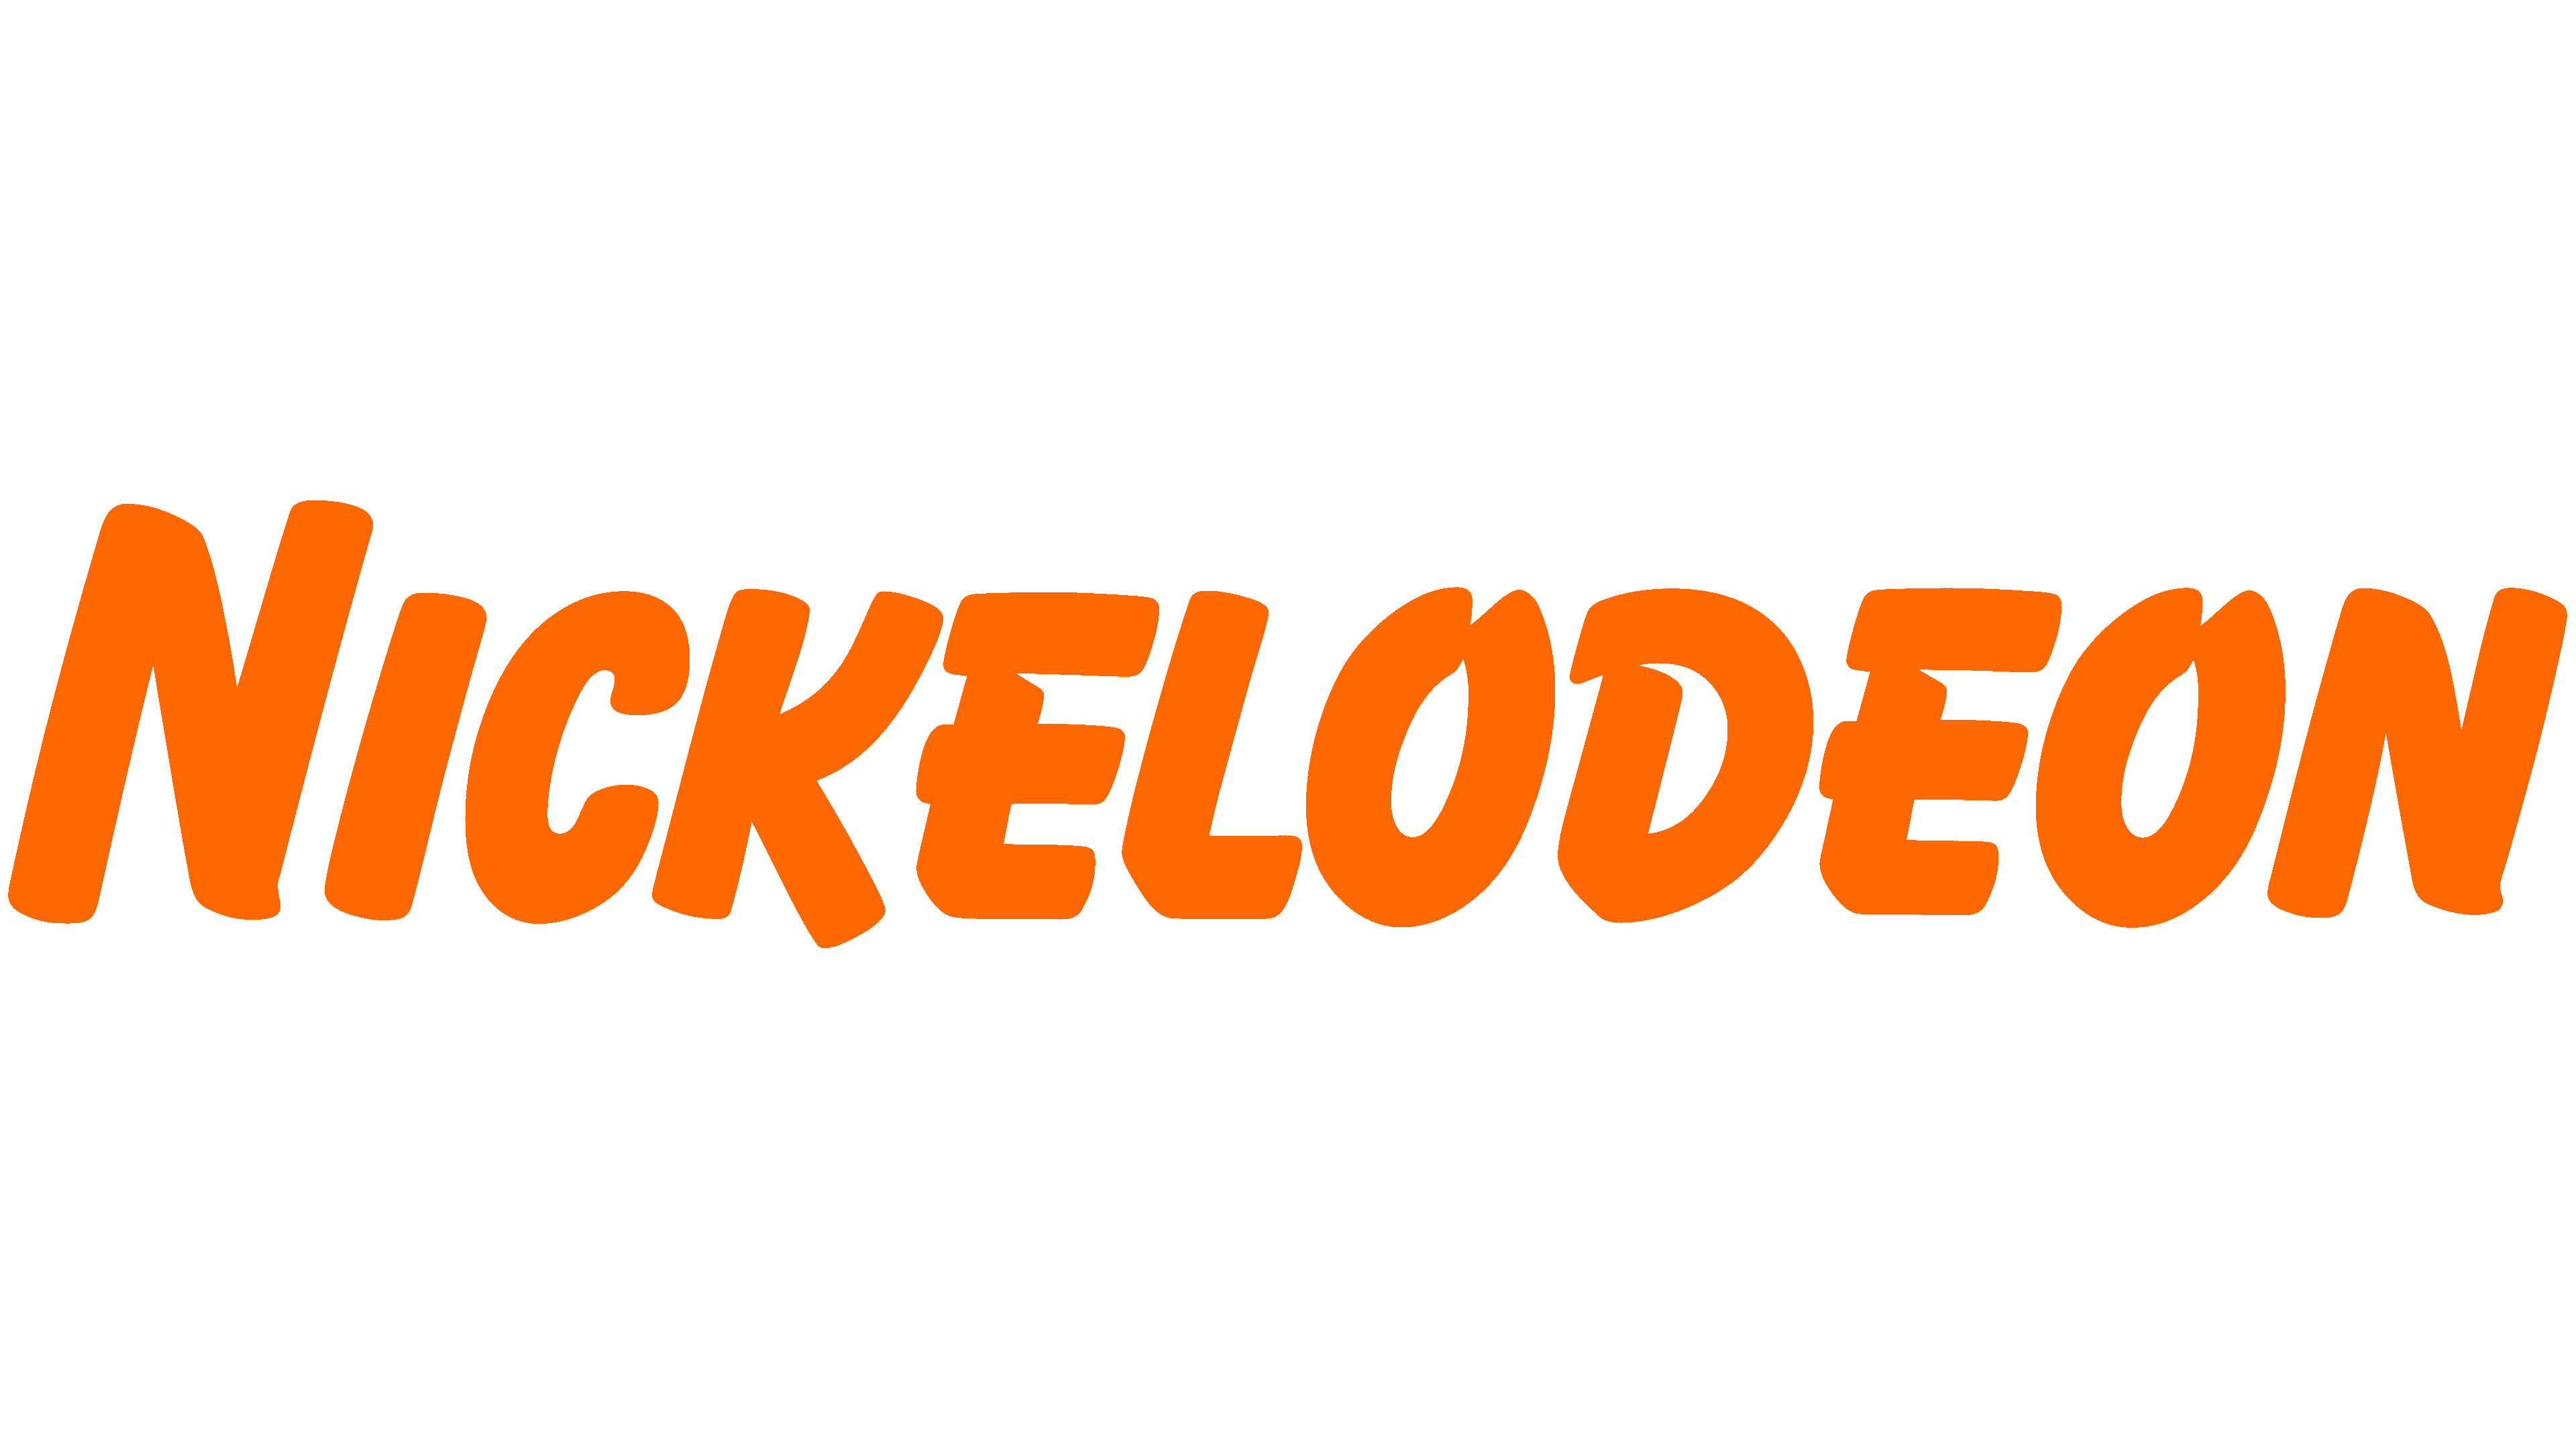 90s nickelodeon logo